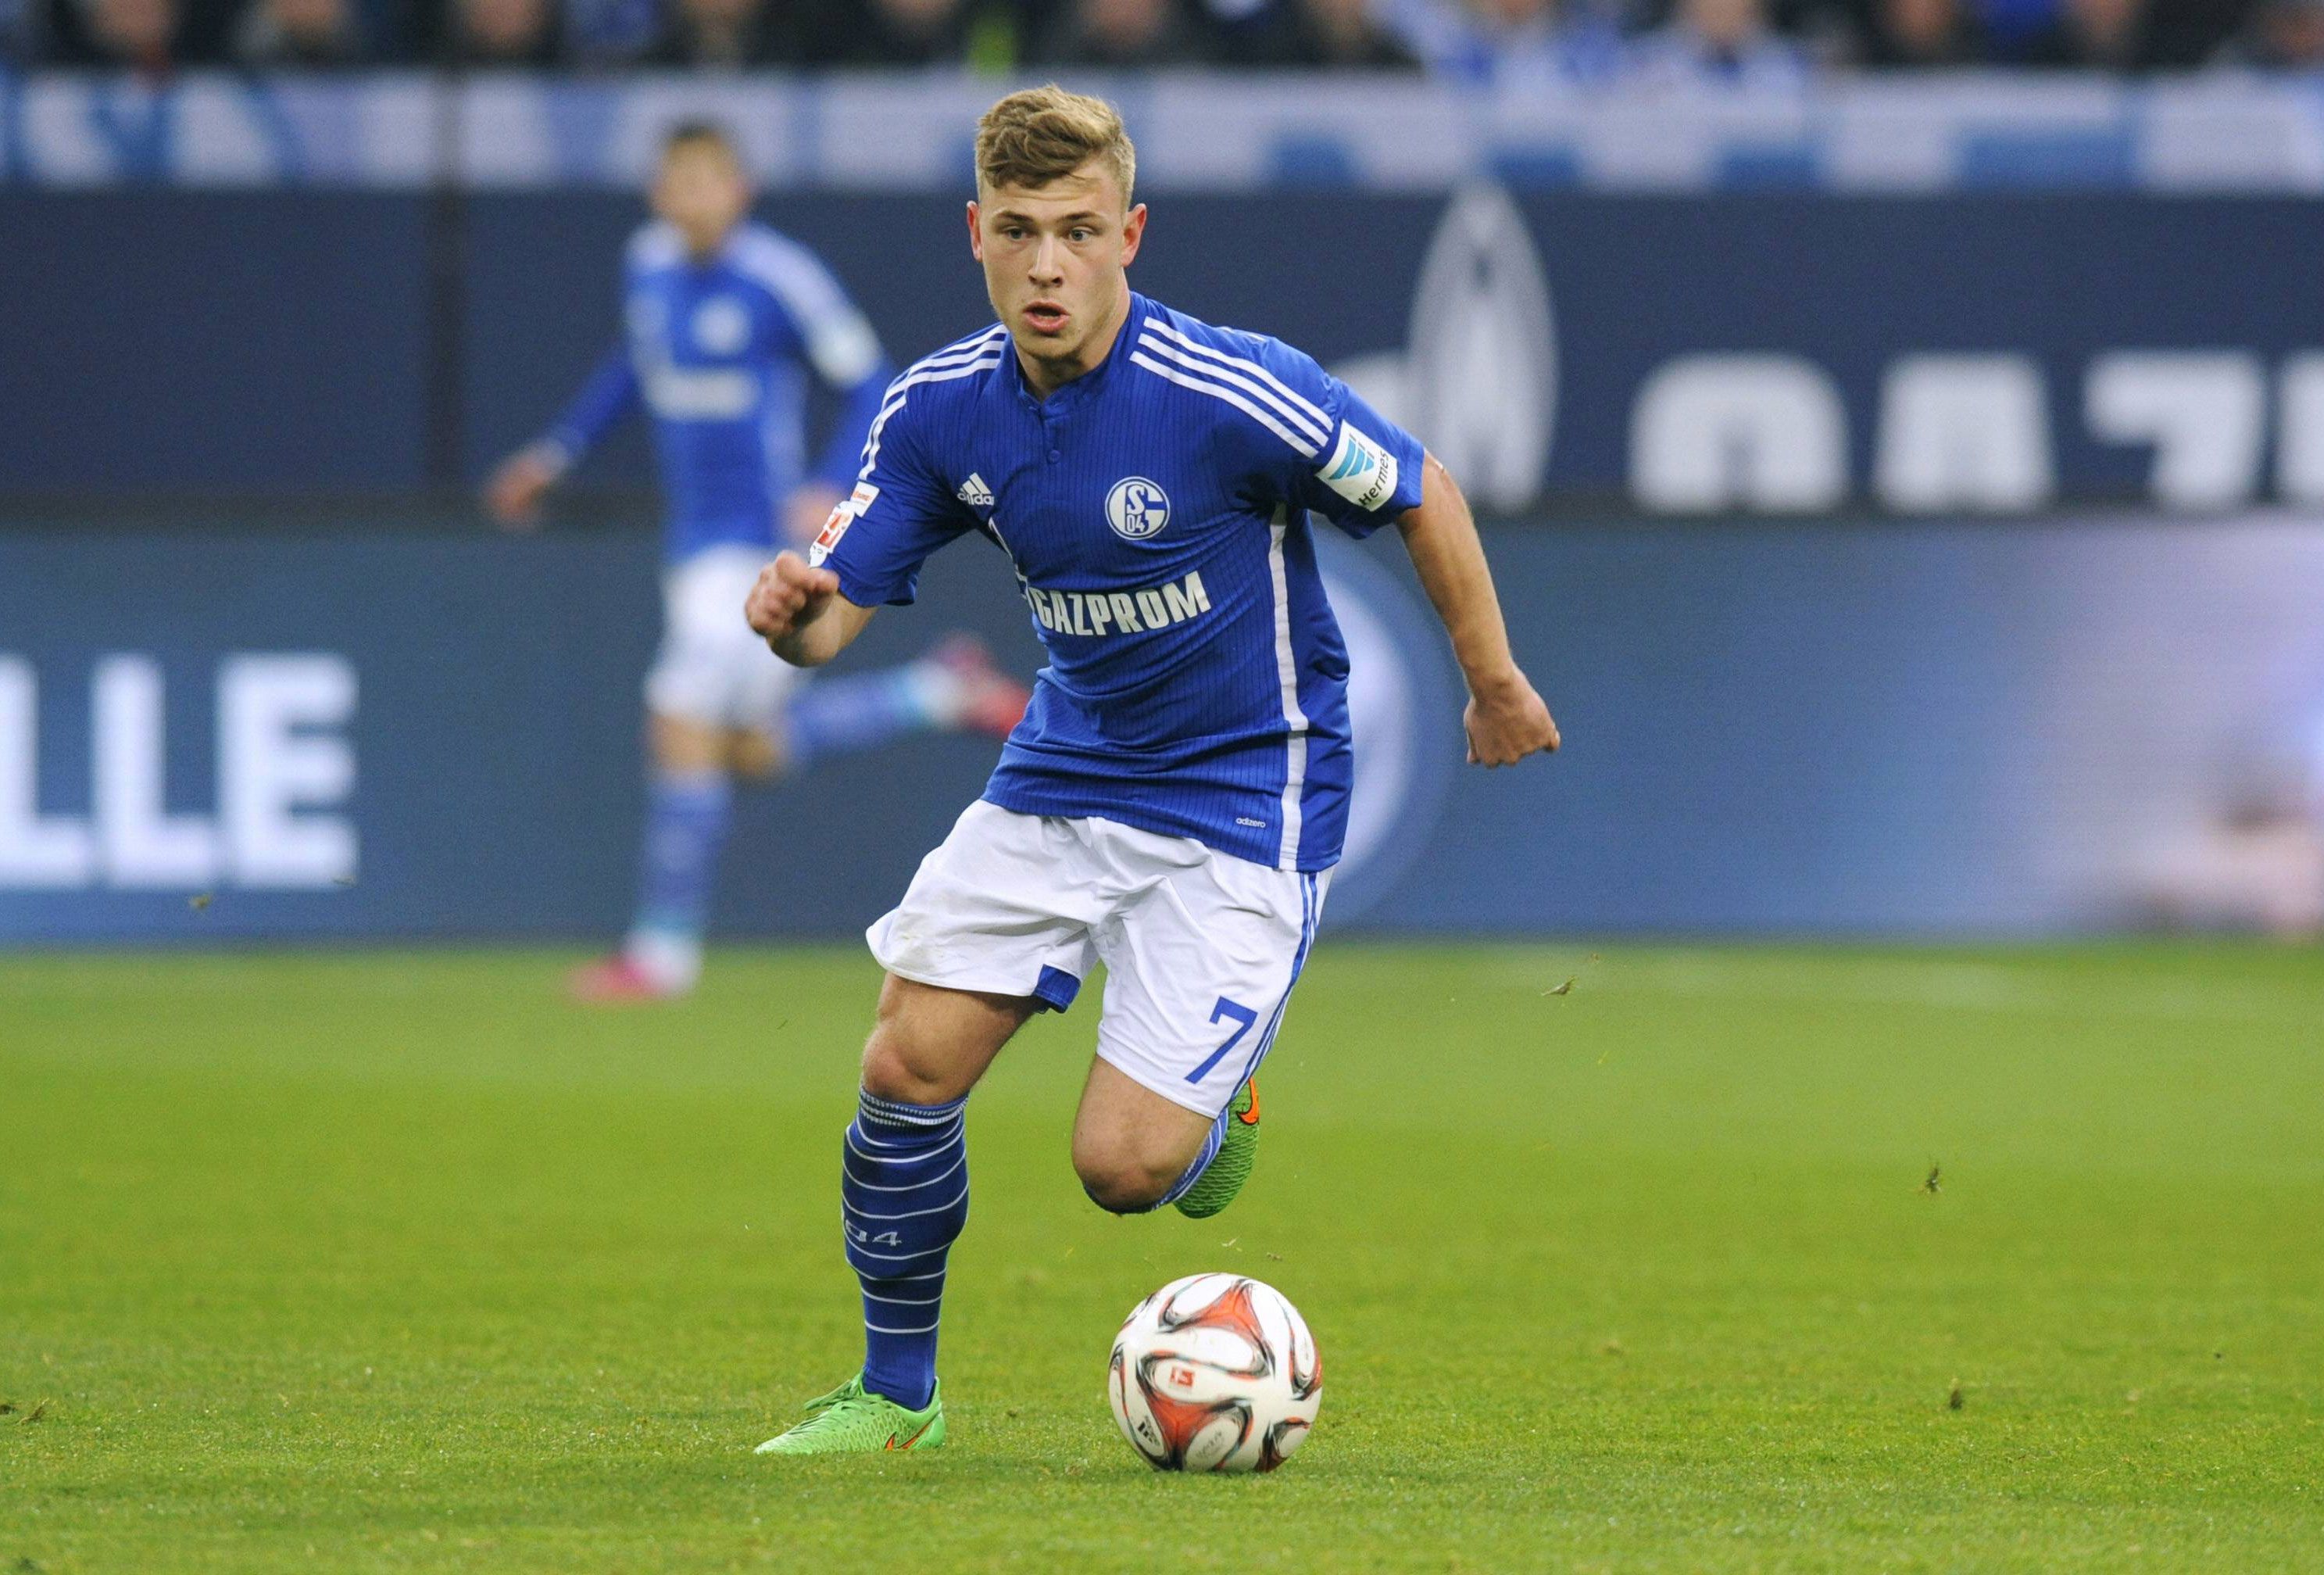 
                <strong>Max Meyer</strong><br>
                Max Meyer ist beinahe kein Talent mehr, so konstant und gesetzt wirkt er bei Schalke 04. Jedoch ist der Spielmacher erst 19 Jahre jung und wird wohl keinen Weg um die deutsche Nationalelf in naher Zukunft finden. Ein weiterer Spieler aus der "Knappenschmiede".
              